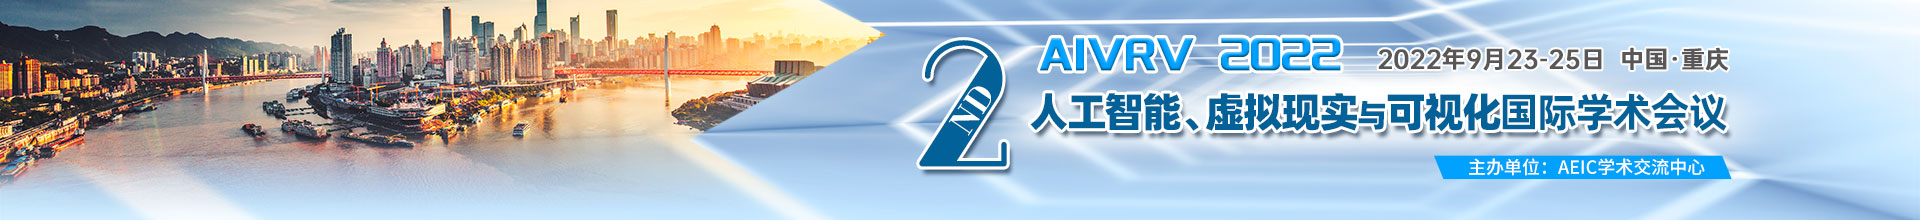 9月-重慶-AIVRV-上線平臺1920x220.jpg